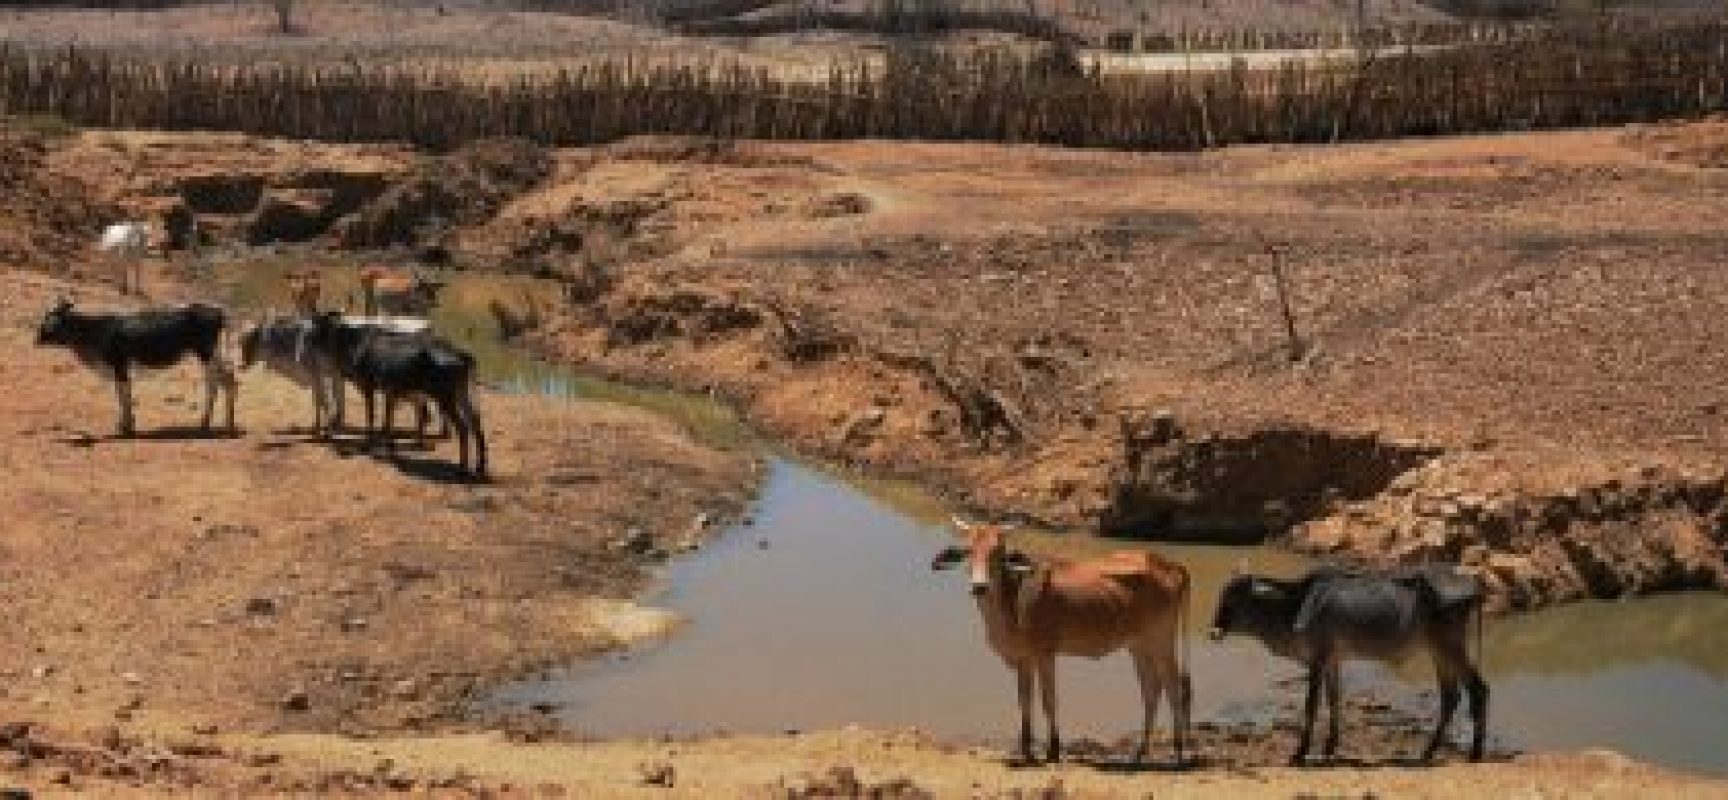 Aplicativo para celular permite acompanhar situação da seca no Nordeste